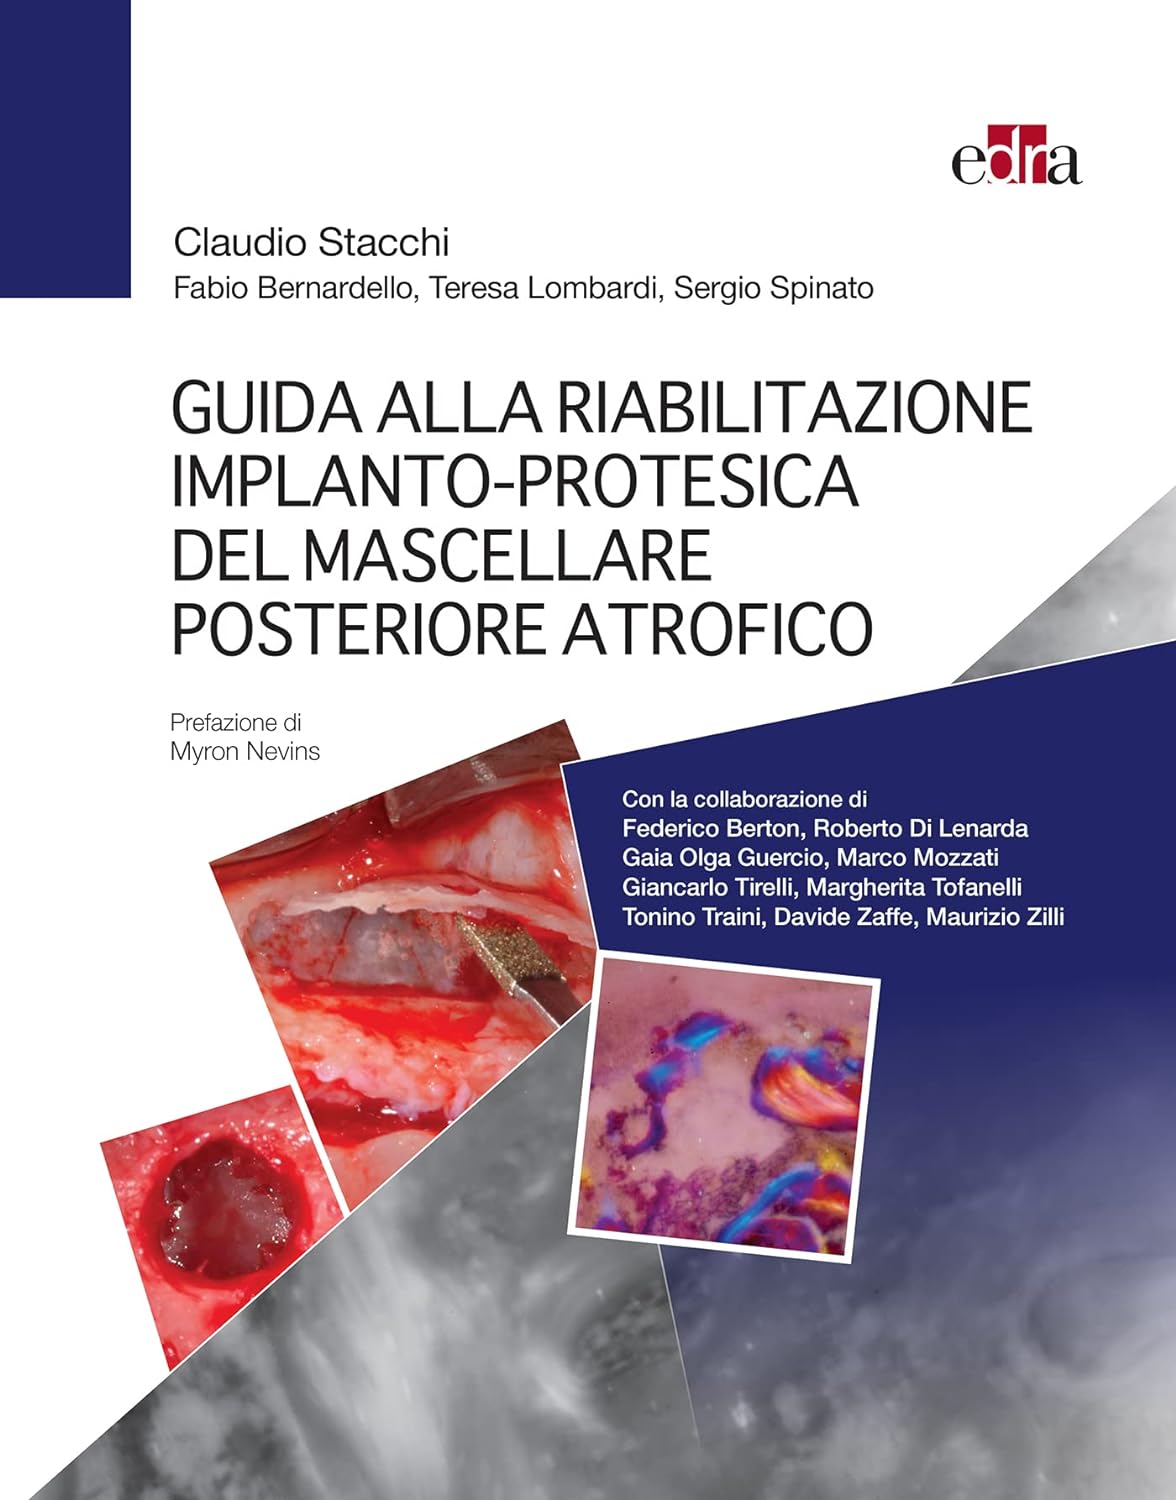 Guida alla riabilitazione implantoprotesica del mascellare posteriore atrofico (EPUB3 + Converted PDF) by  Claudio Stacchi 